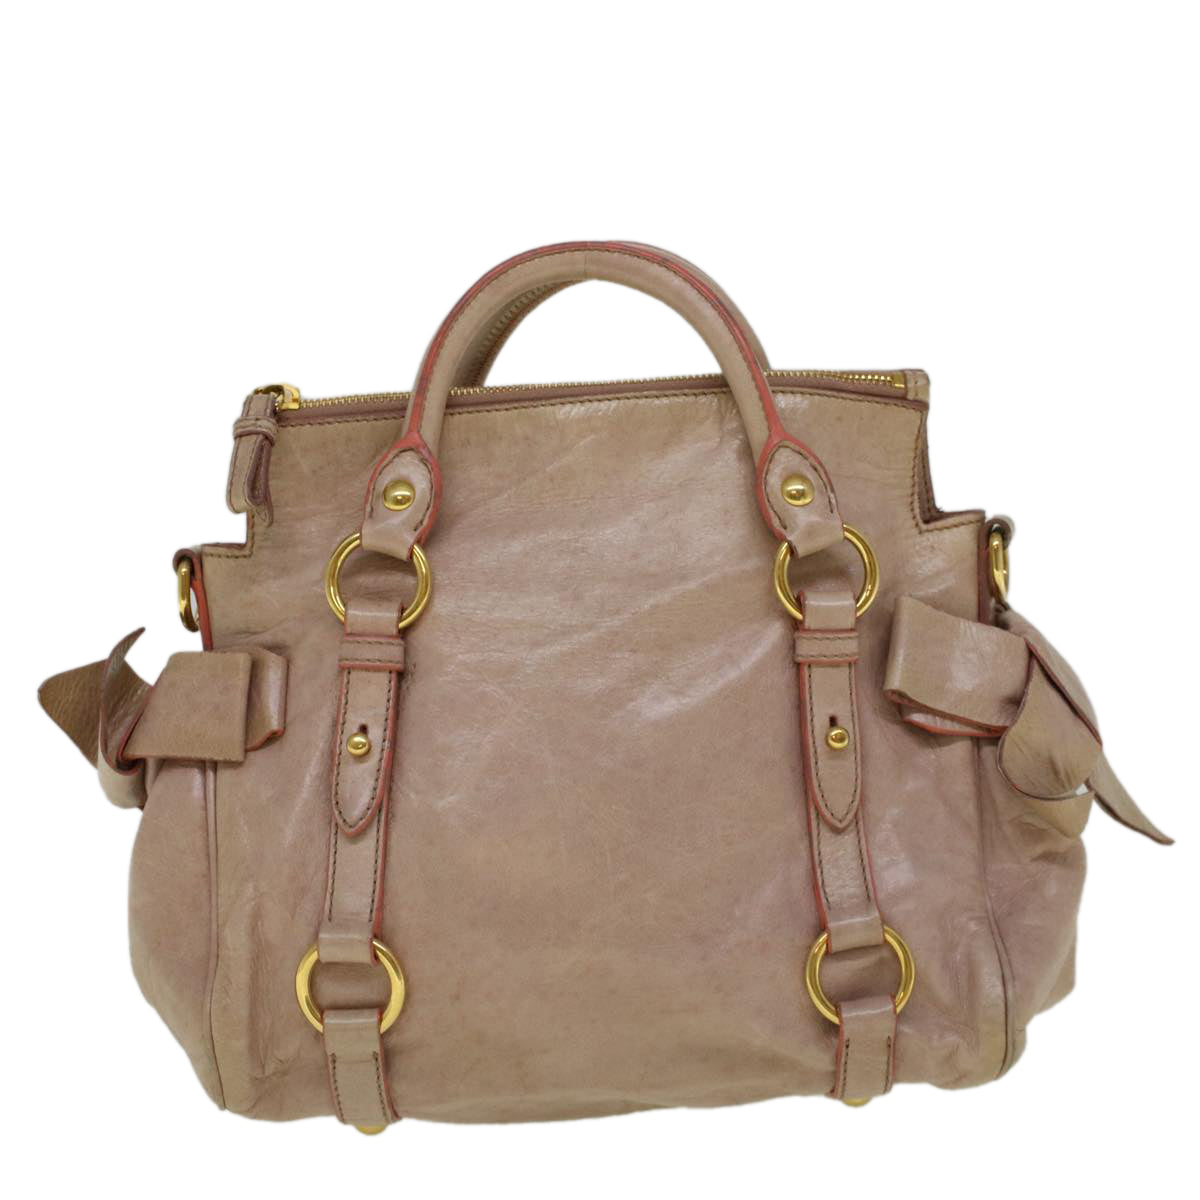 Miu Miu Hand Bag Leather 2way Pink Auth yk9283 - 0